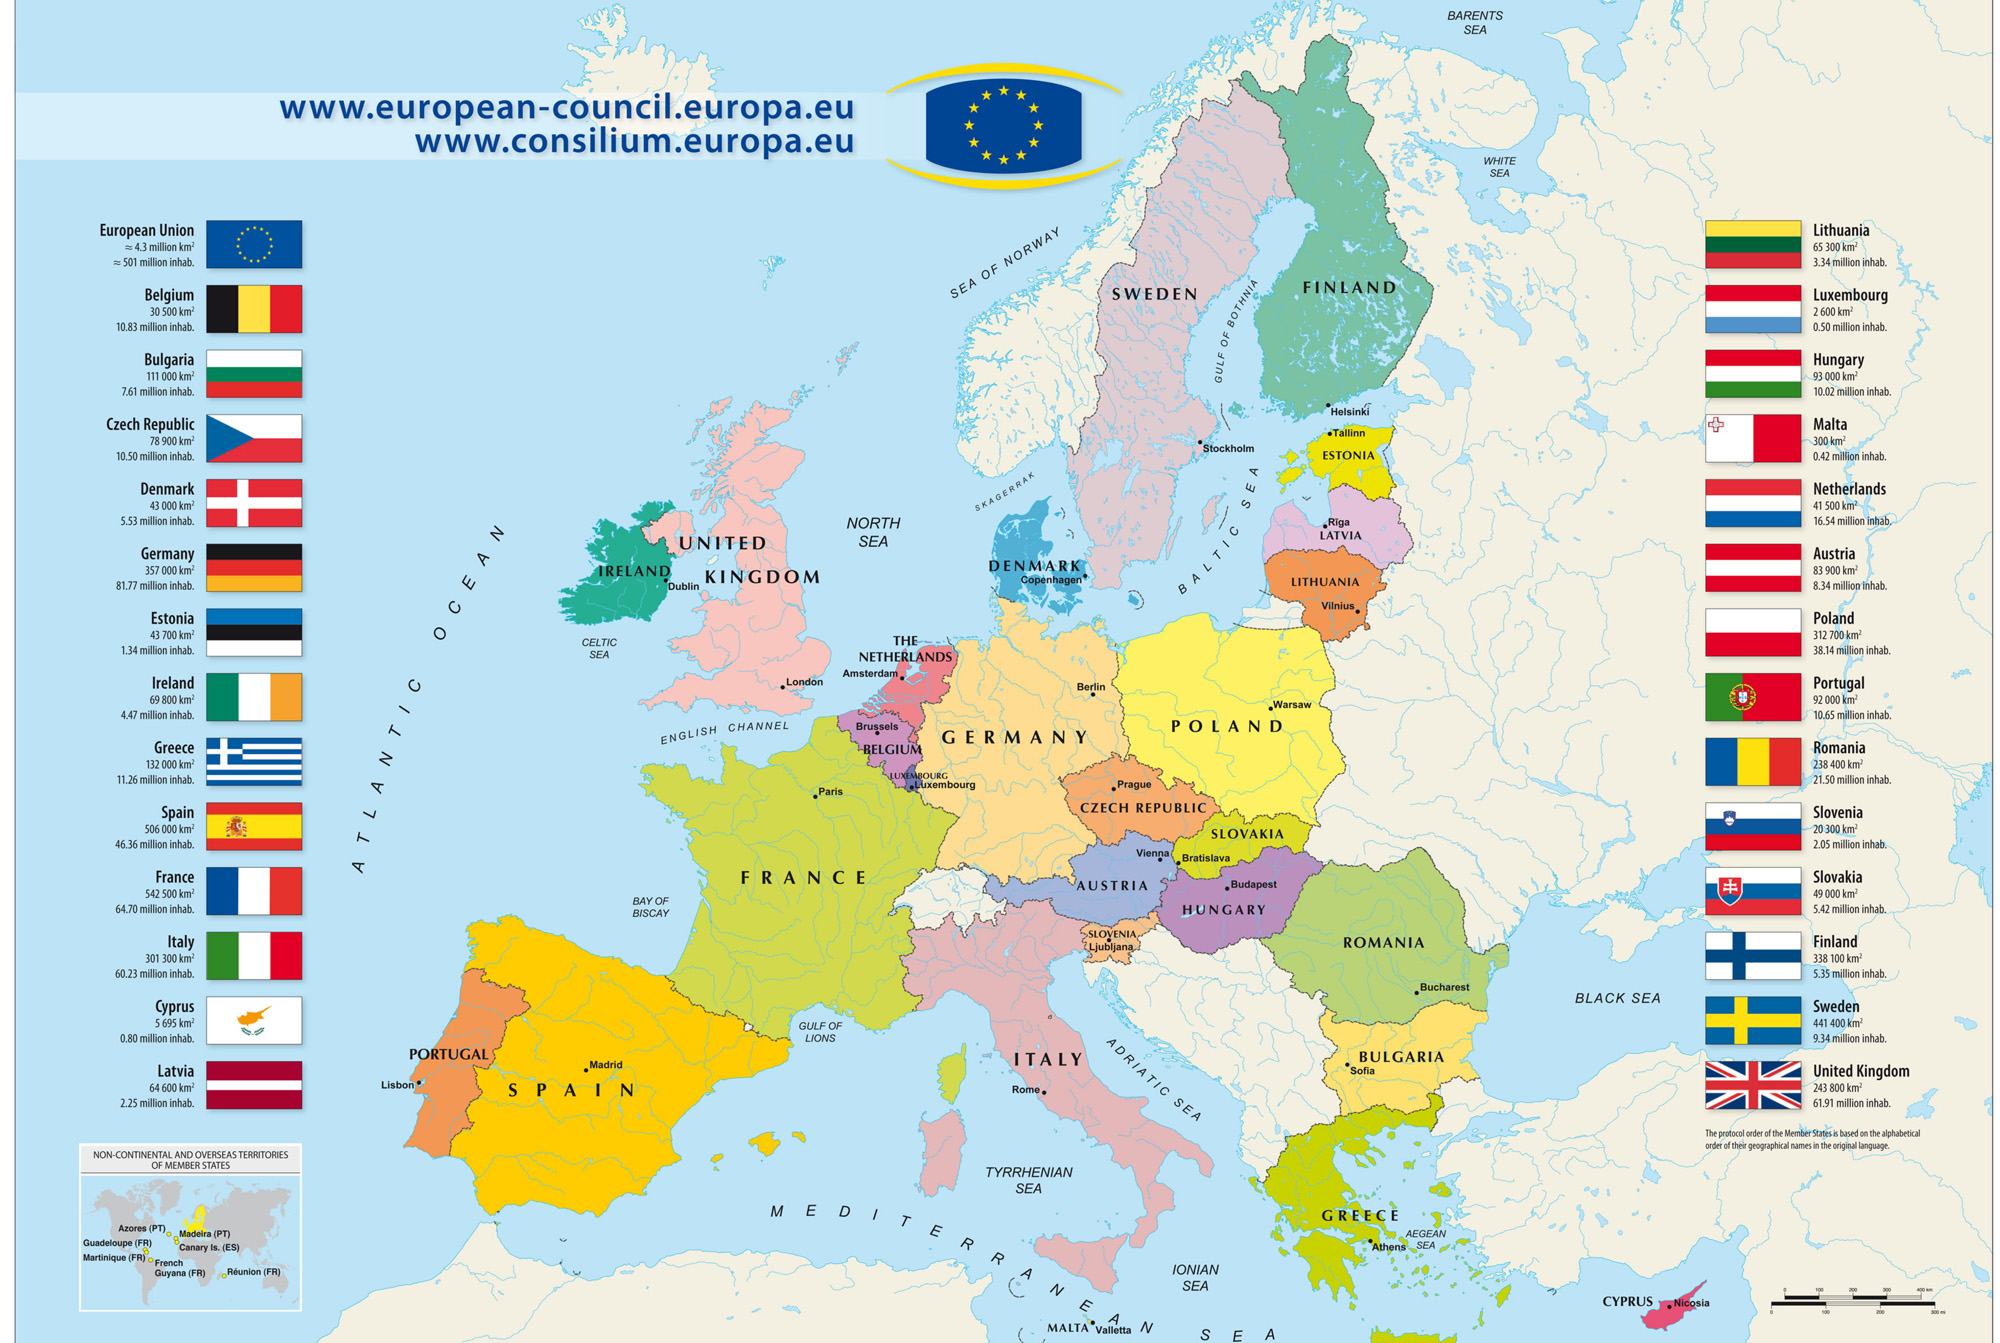 Bản đồ Châu Âu năm 2024 hiện thể hiện một châu Âu ngày càng sáng sủa và phát triển. Việc kết nối giữa các quốc gia và vùng lãnh thổ đã góp phần tạo nên một châu Âu thống nhất và đầy màu sắc, đồng thời cung cấp nhiều lợi ích về kinh tế, văn hóa và xã hội.